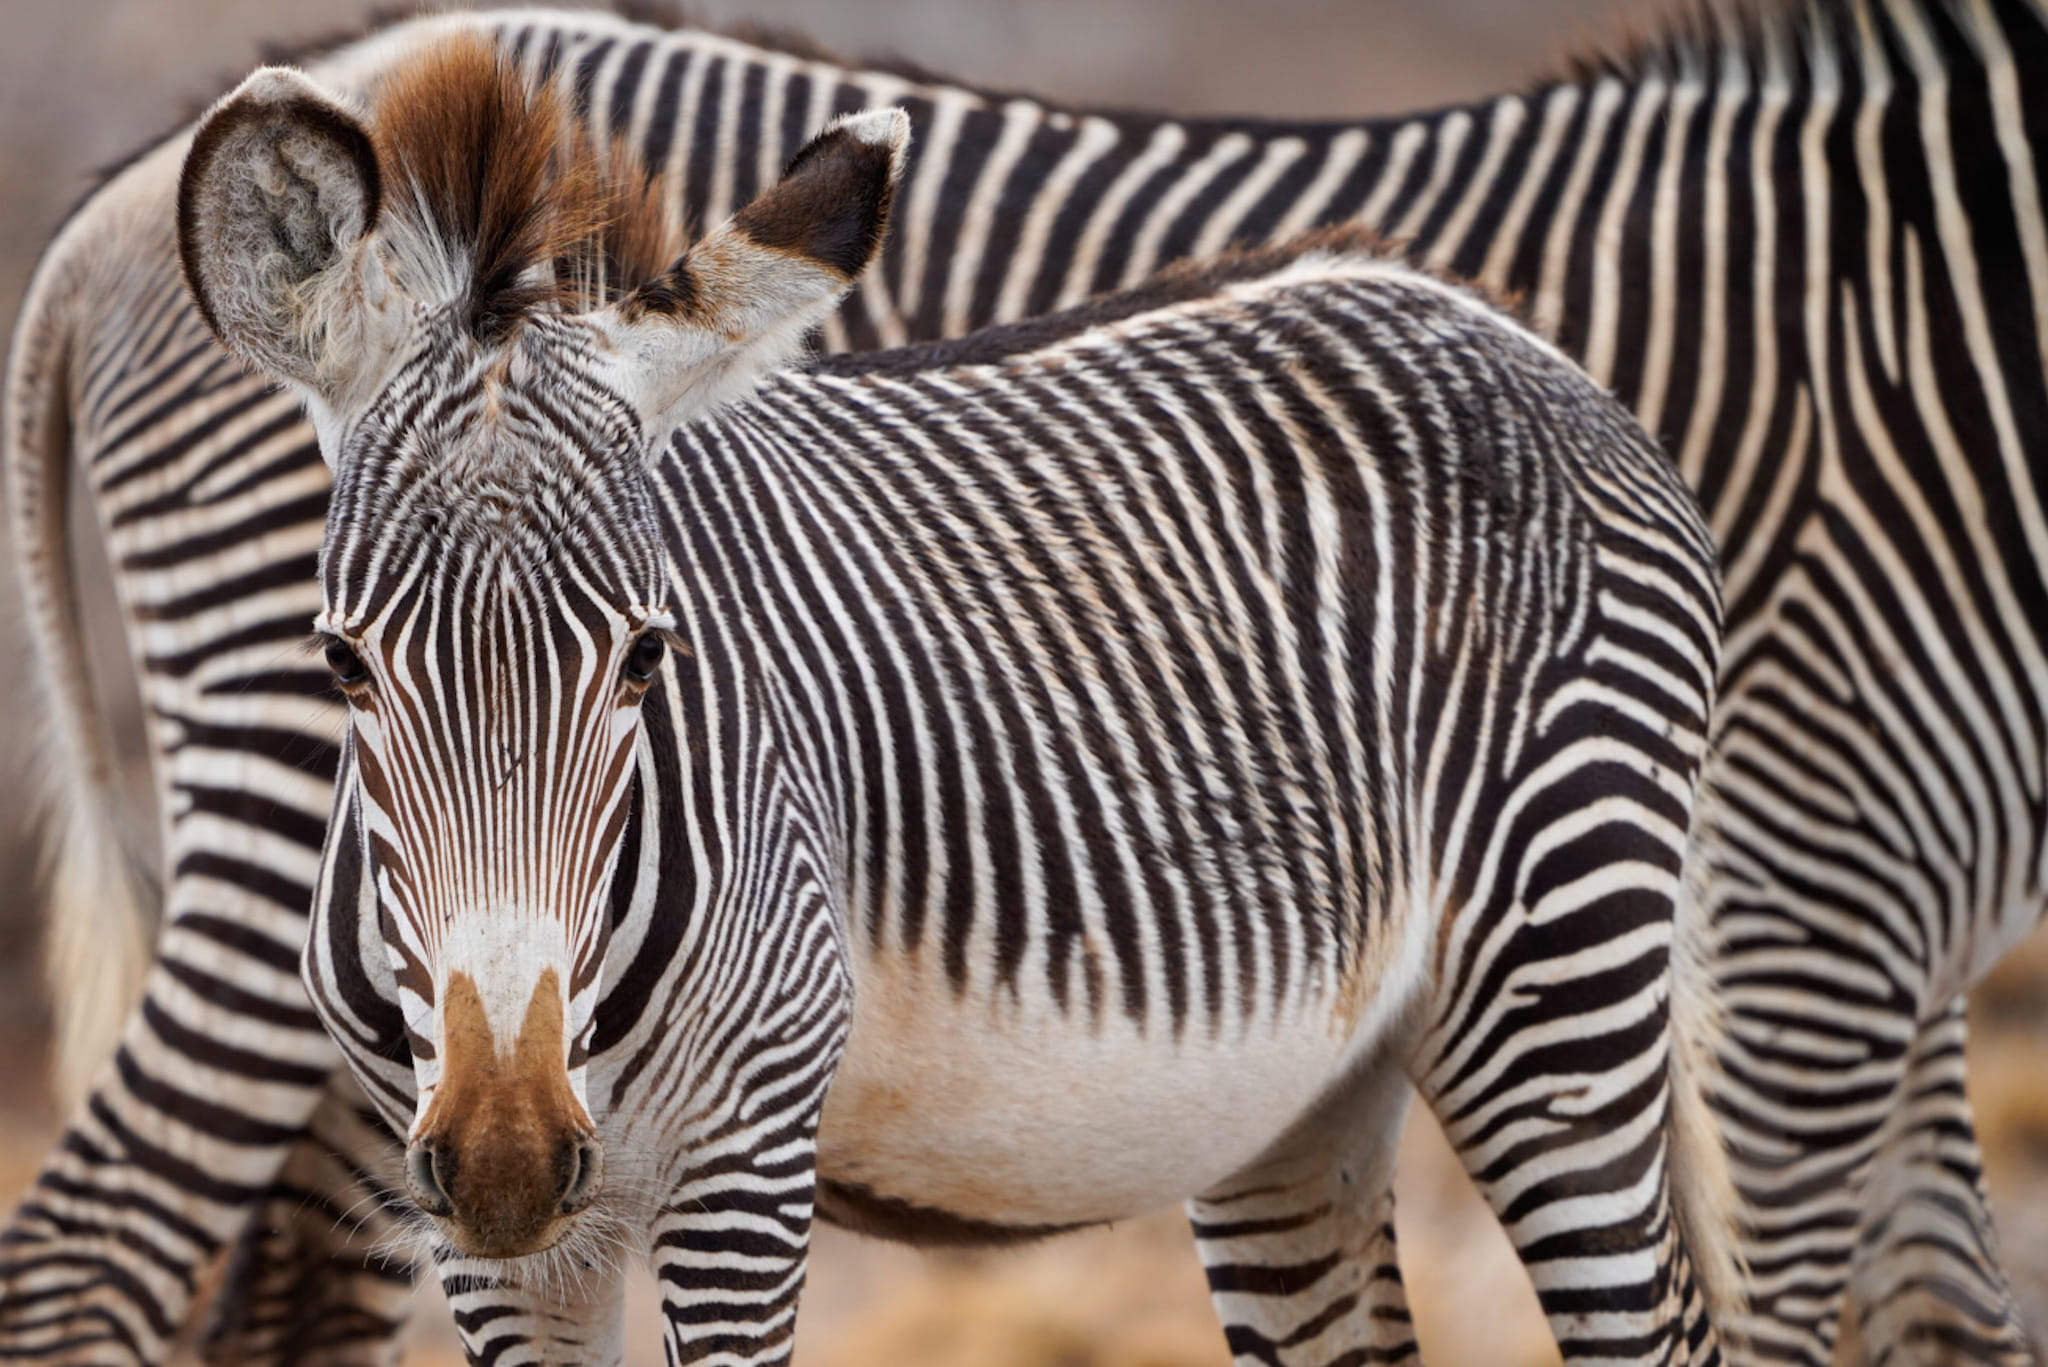 Sie haben Mickymaus-Ohren und die schönsten Streifen zwischen den Zebra-Arten. Hier im Samburu Nationalpark leben noch viele Grevy-Zebras.